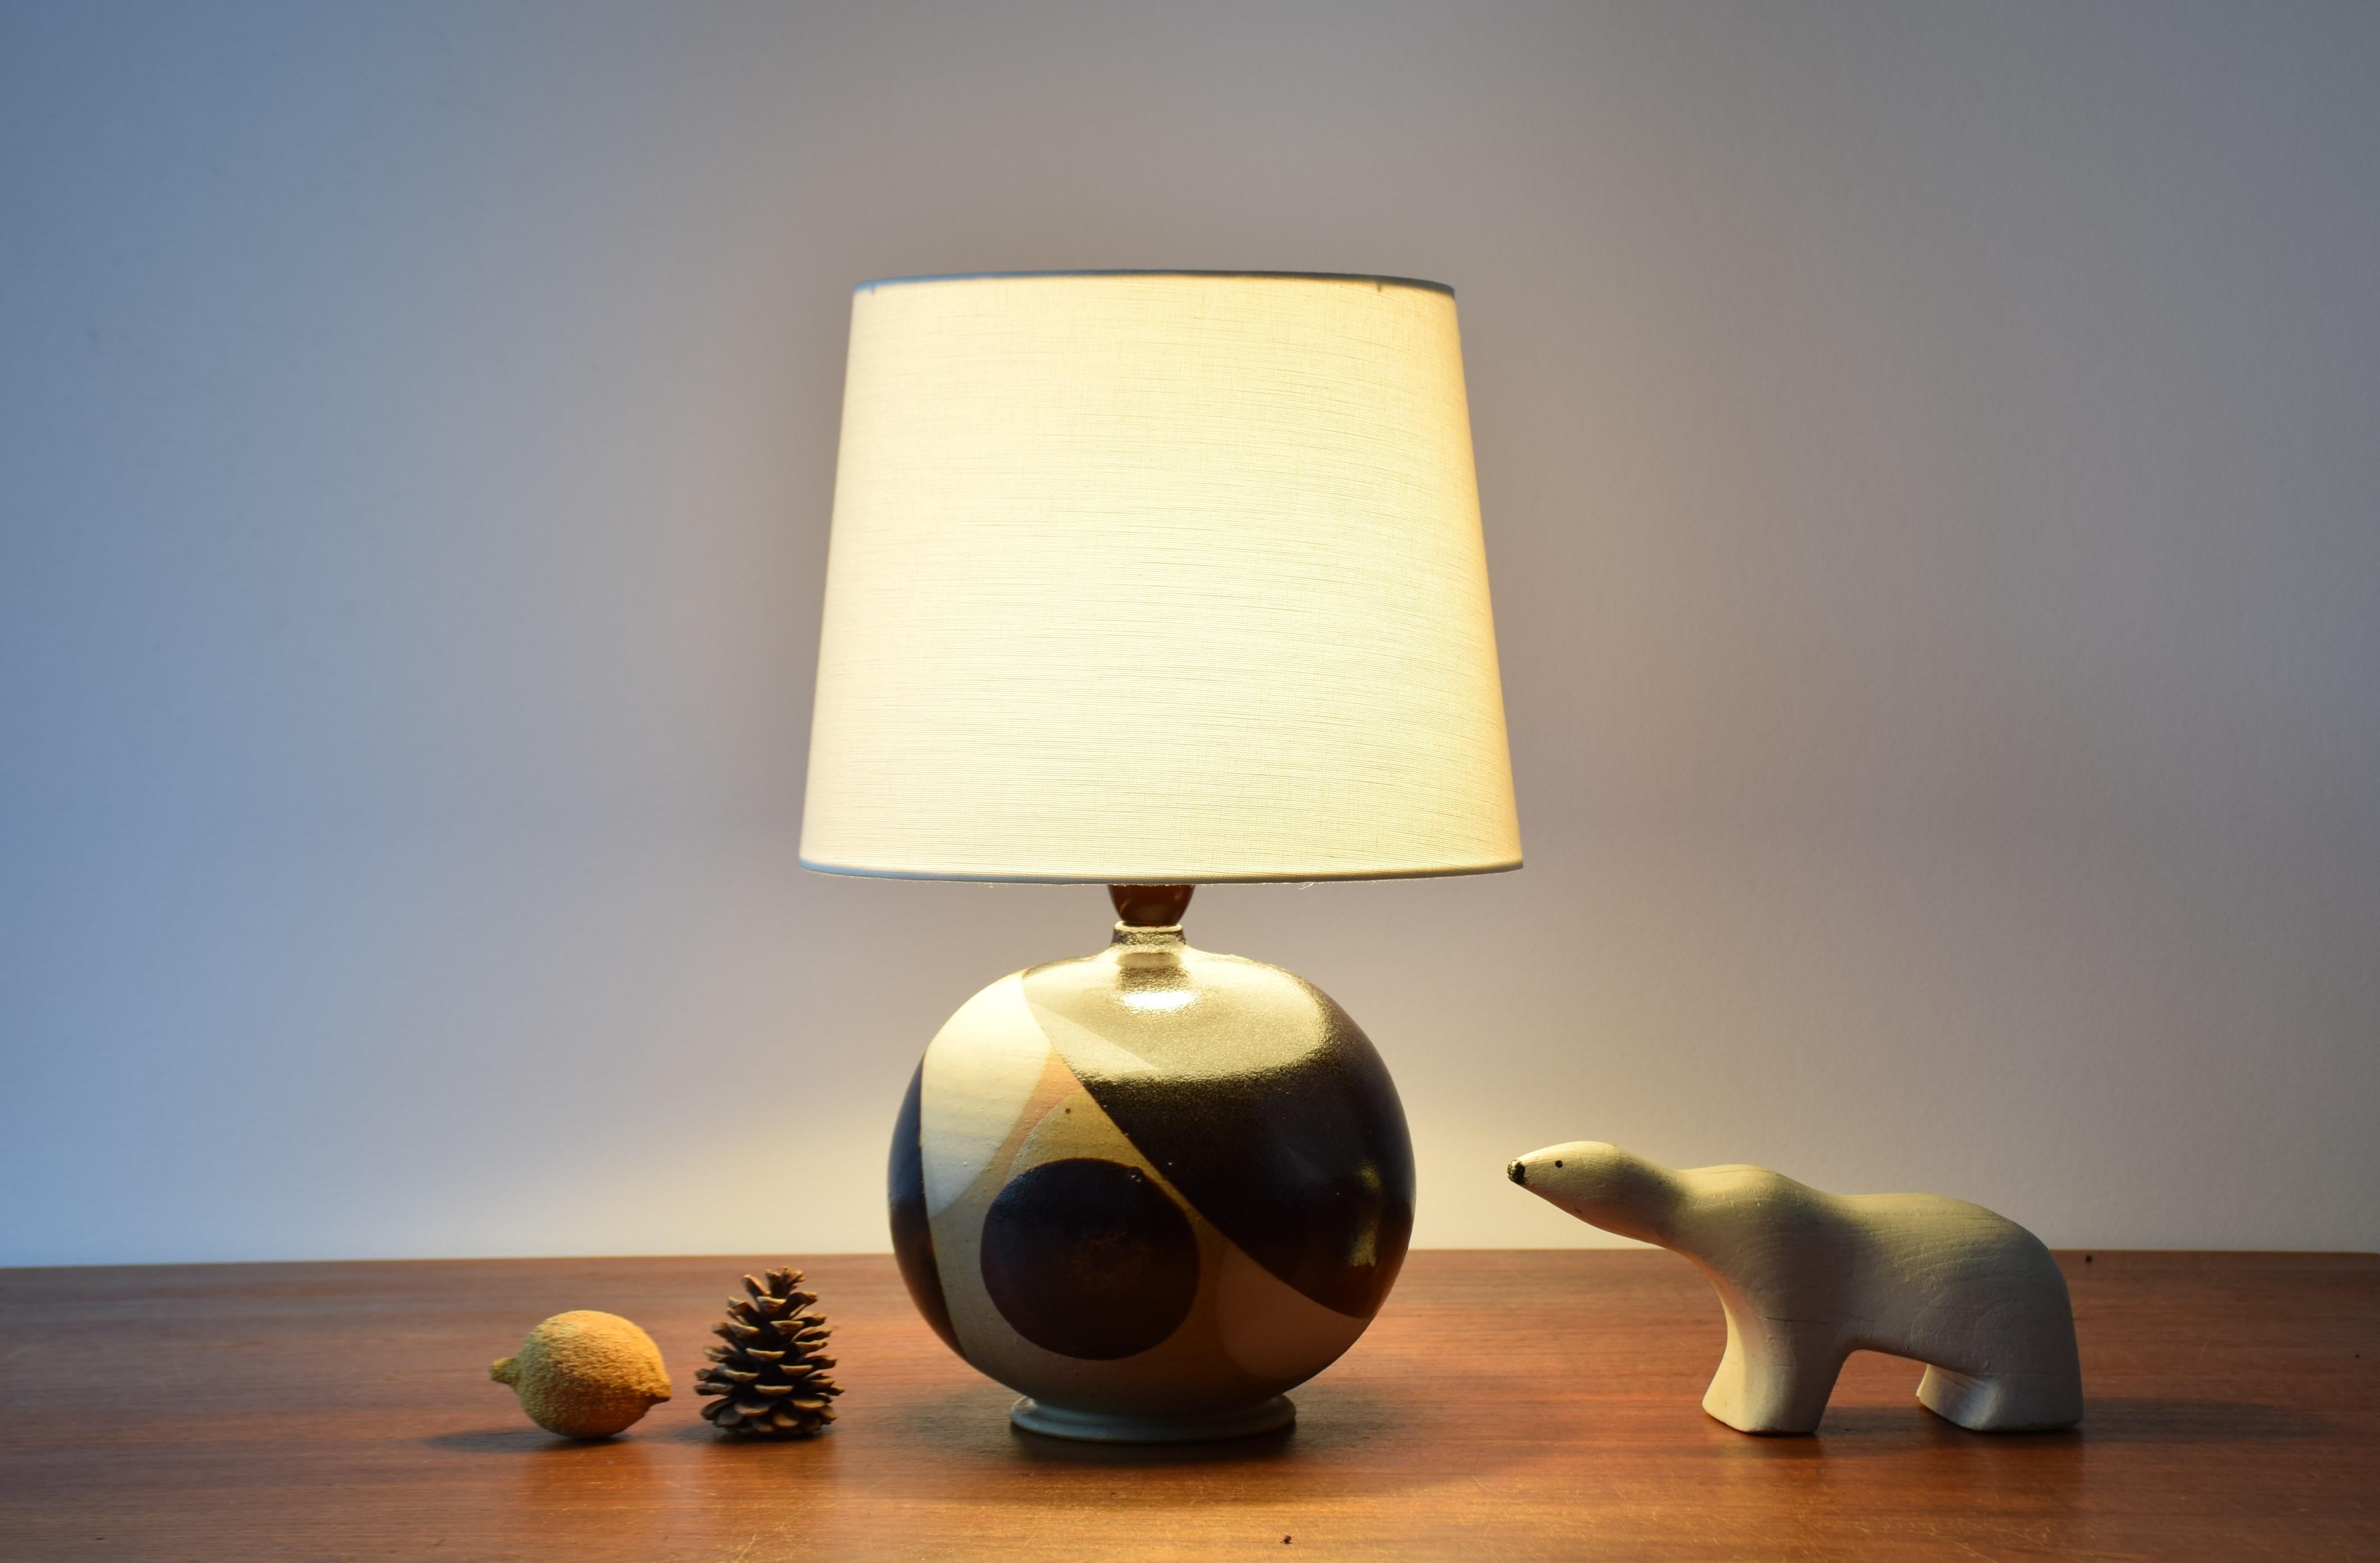 Lampe de table moderne danoise en forme de boule, réalisée par les céramistes Karin et Erling Heerwagen en 1974. 
La forme de la lampe est reprise dans le décor qui présente des cercles et des parties de cercles en glaçure noire et blanche sur